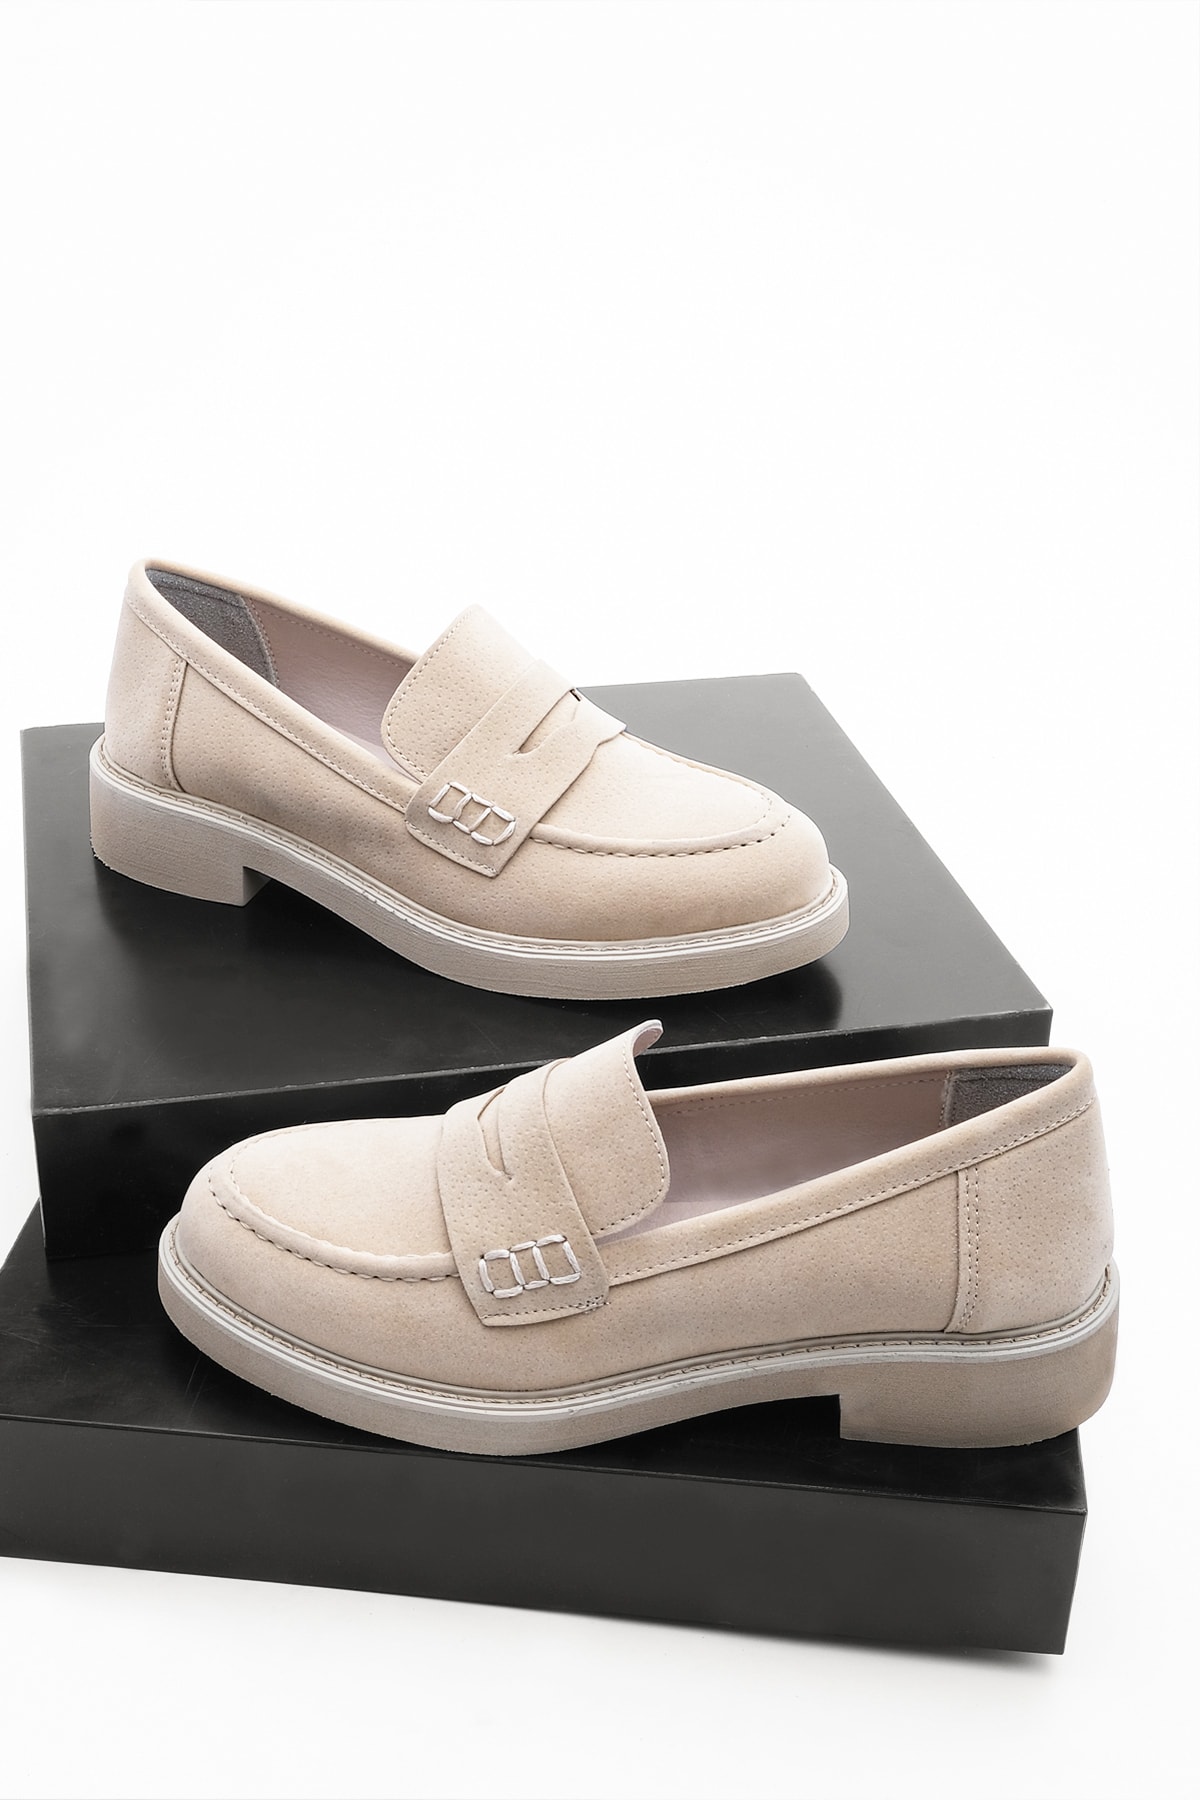 Marjin Women's Loafers Loafers Casual Shoes Andel Beige